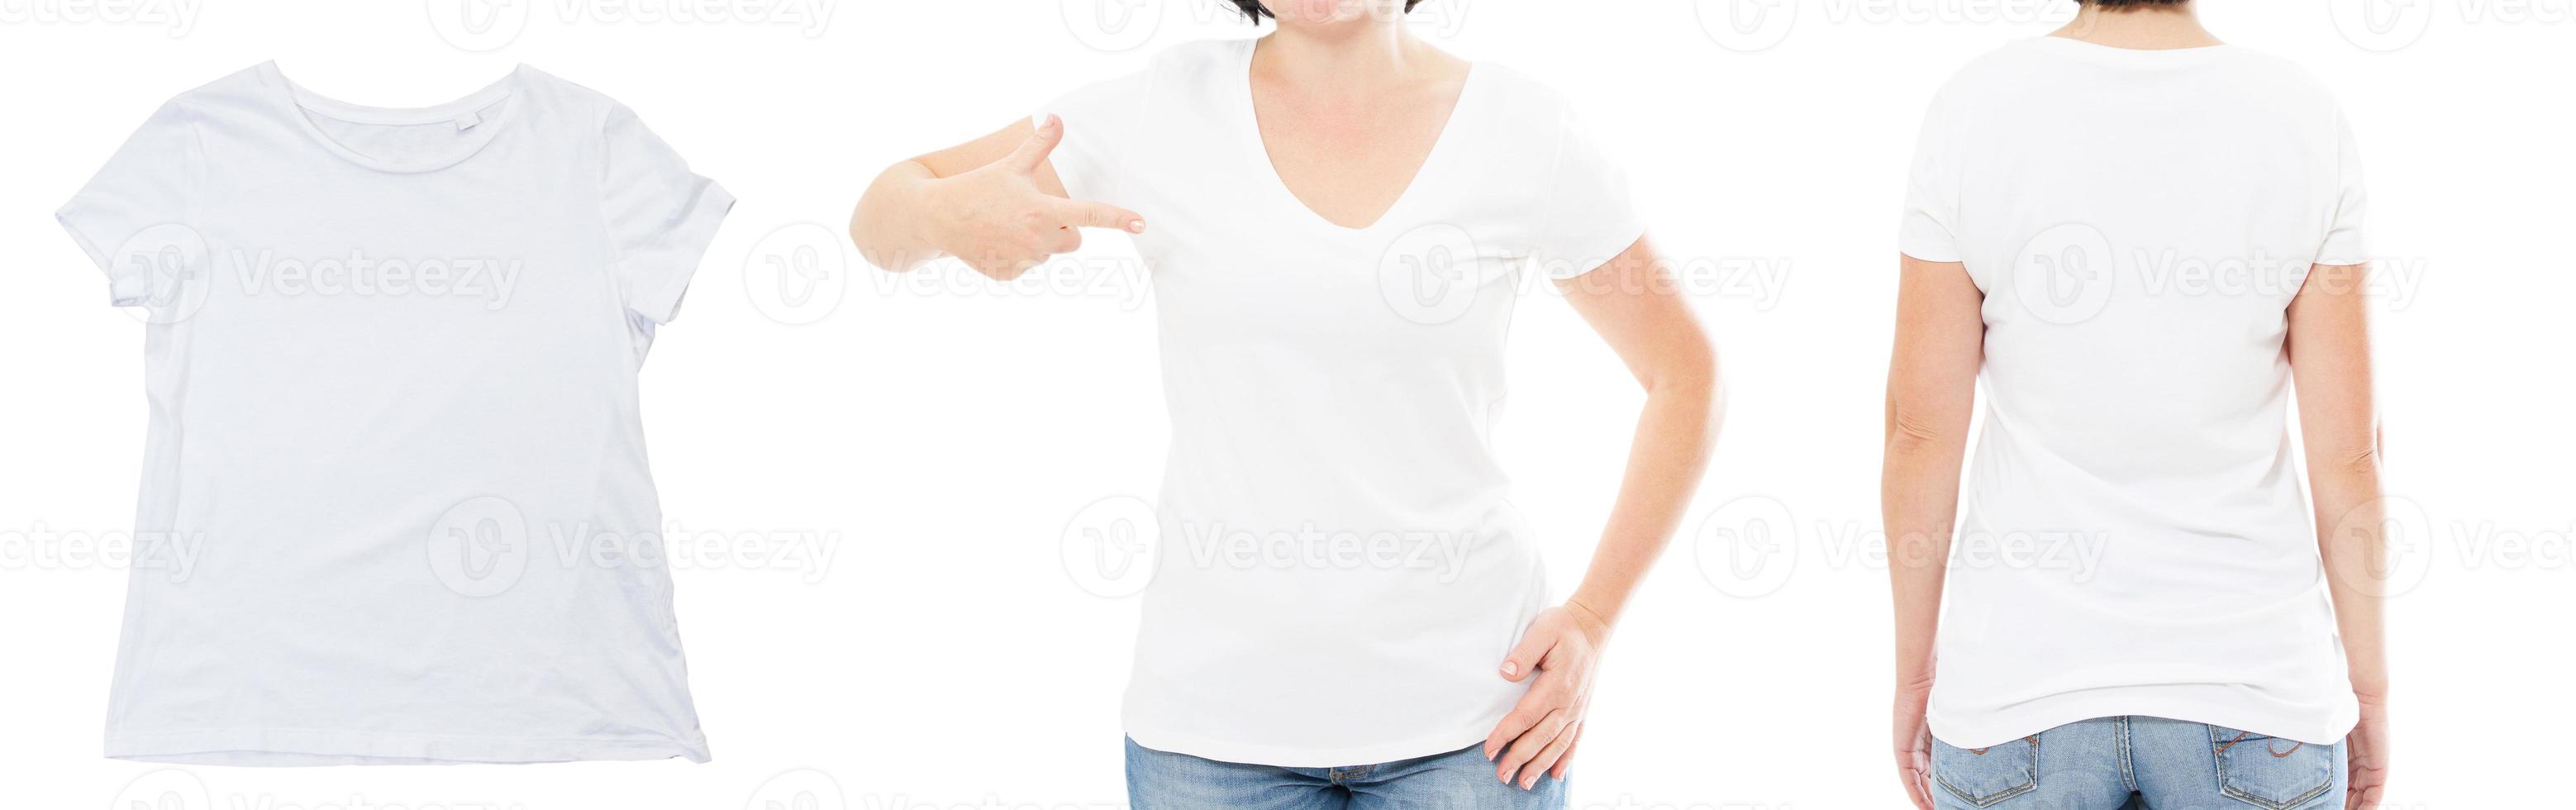 weißes t-shirt mock-up leere nahaufnahme, weibliches t-shirt-set isoliert über weiß foto